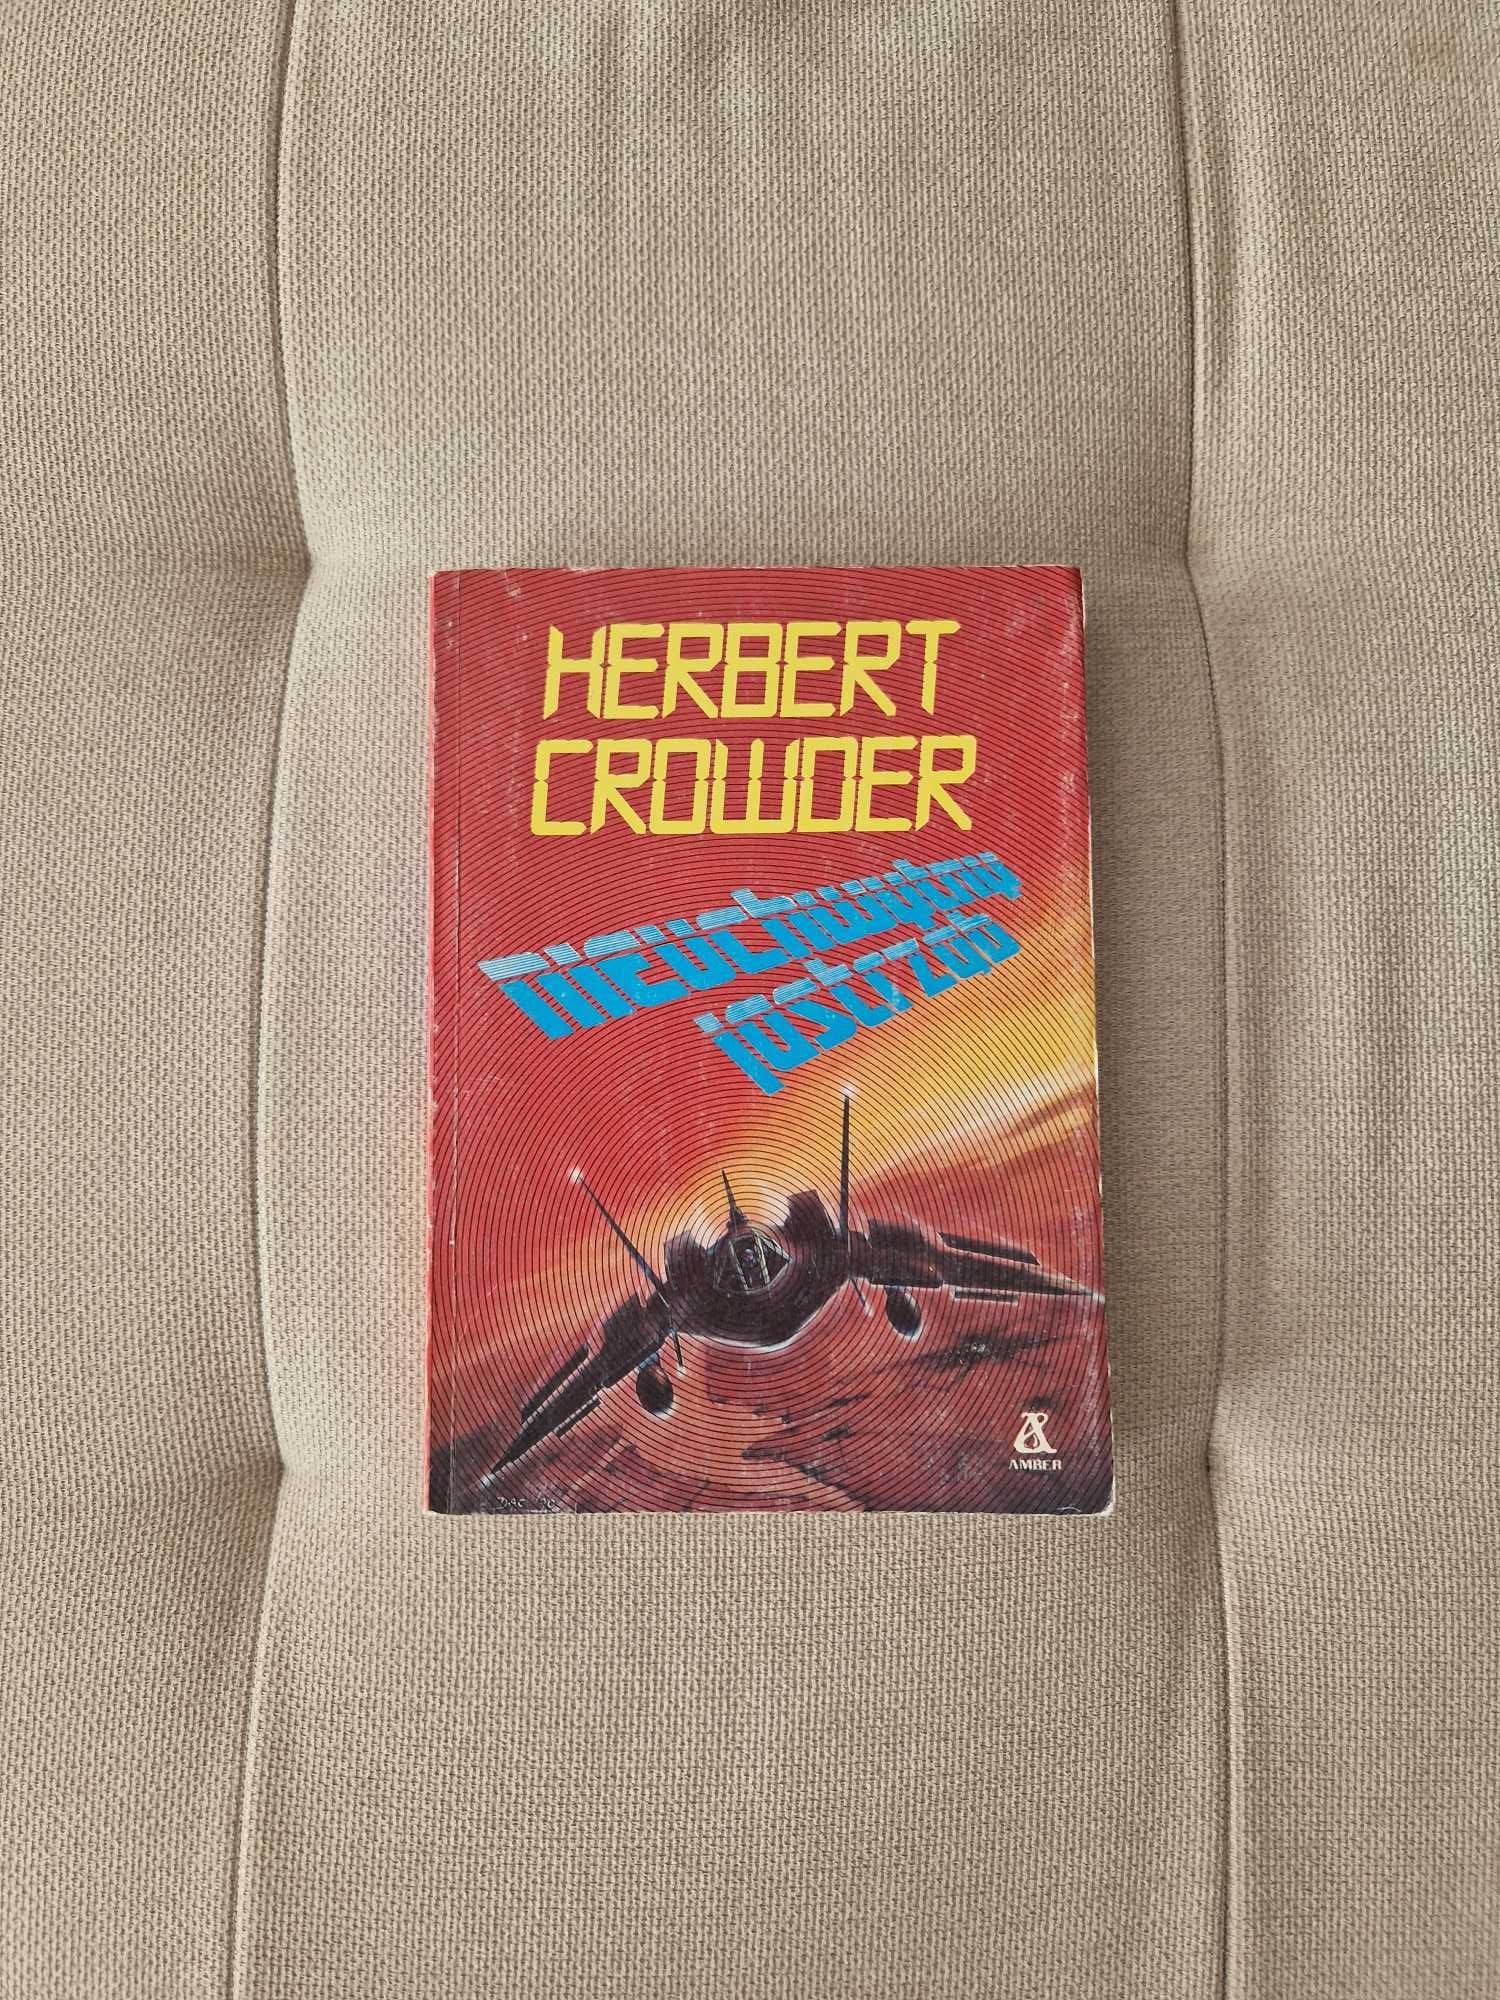 Herbert Crowder - Nieuchwytny jastrząb